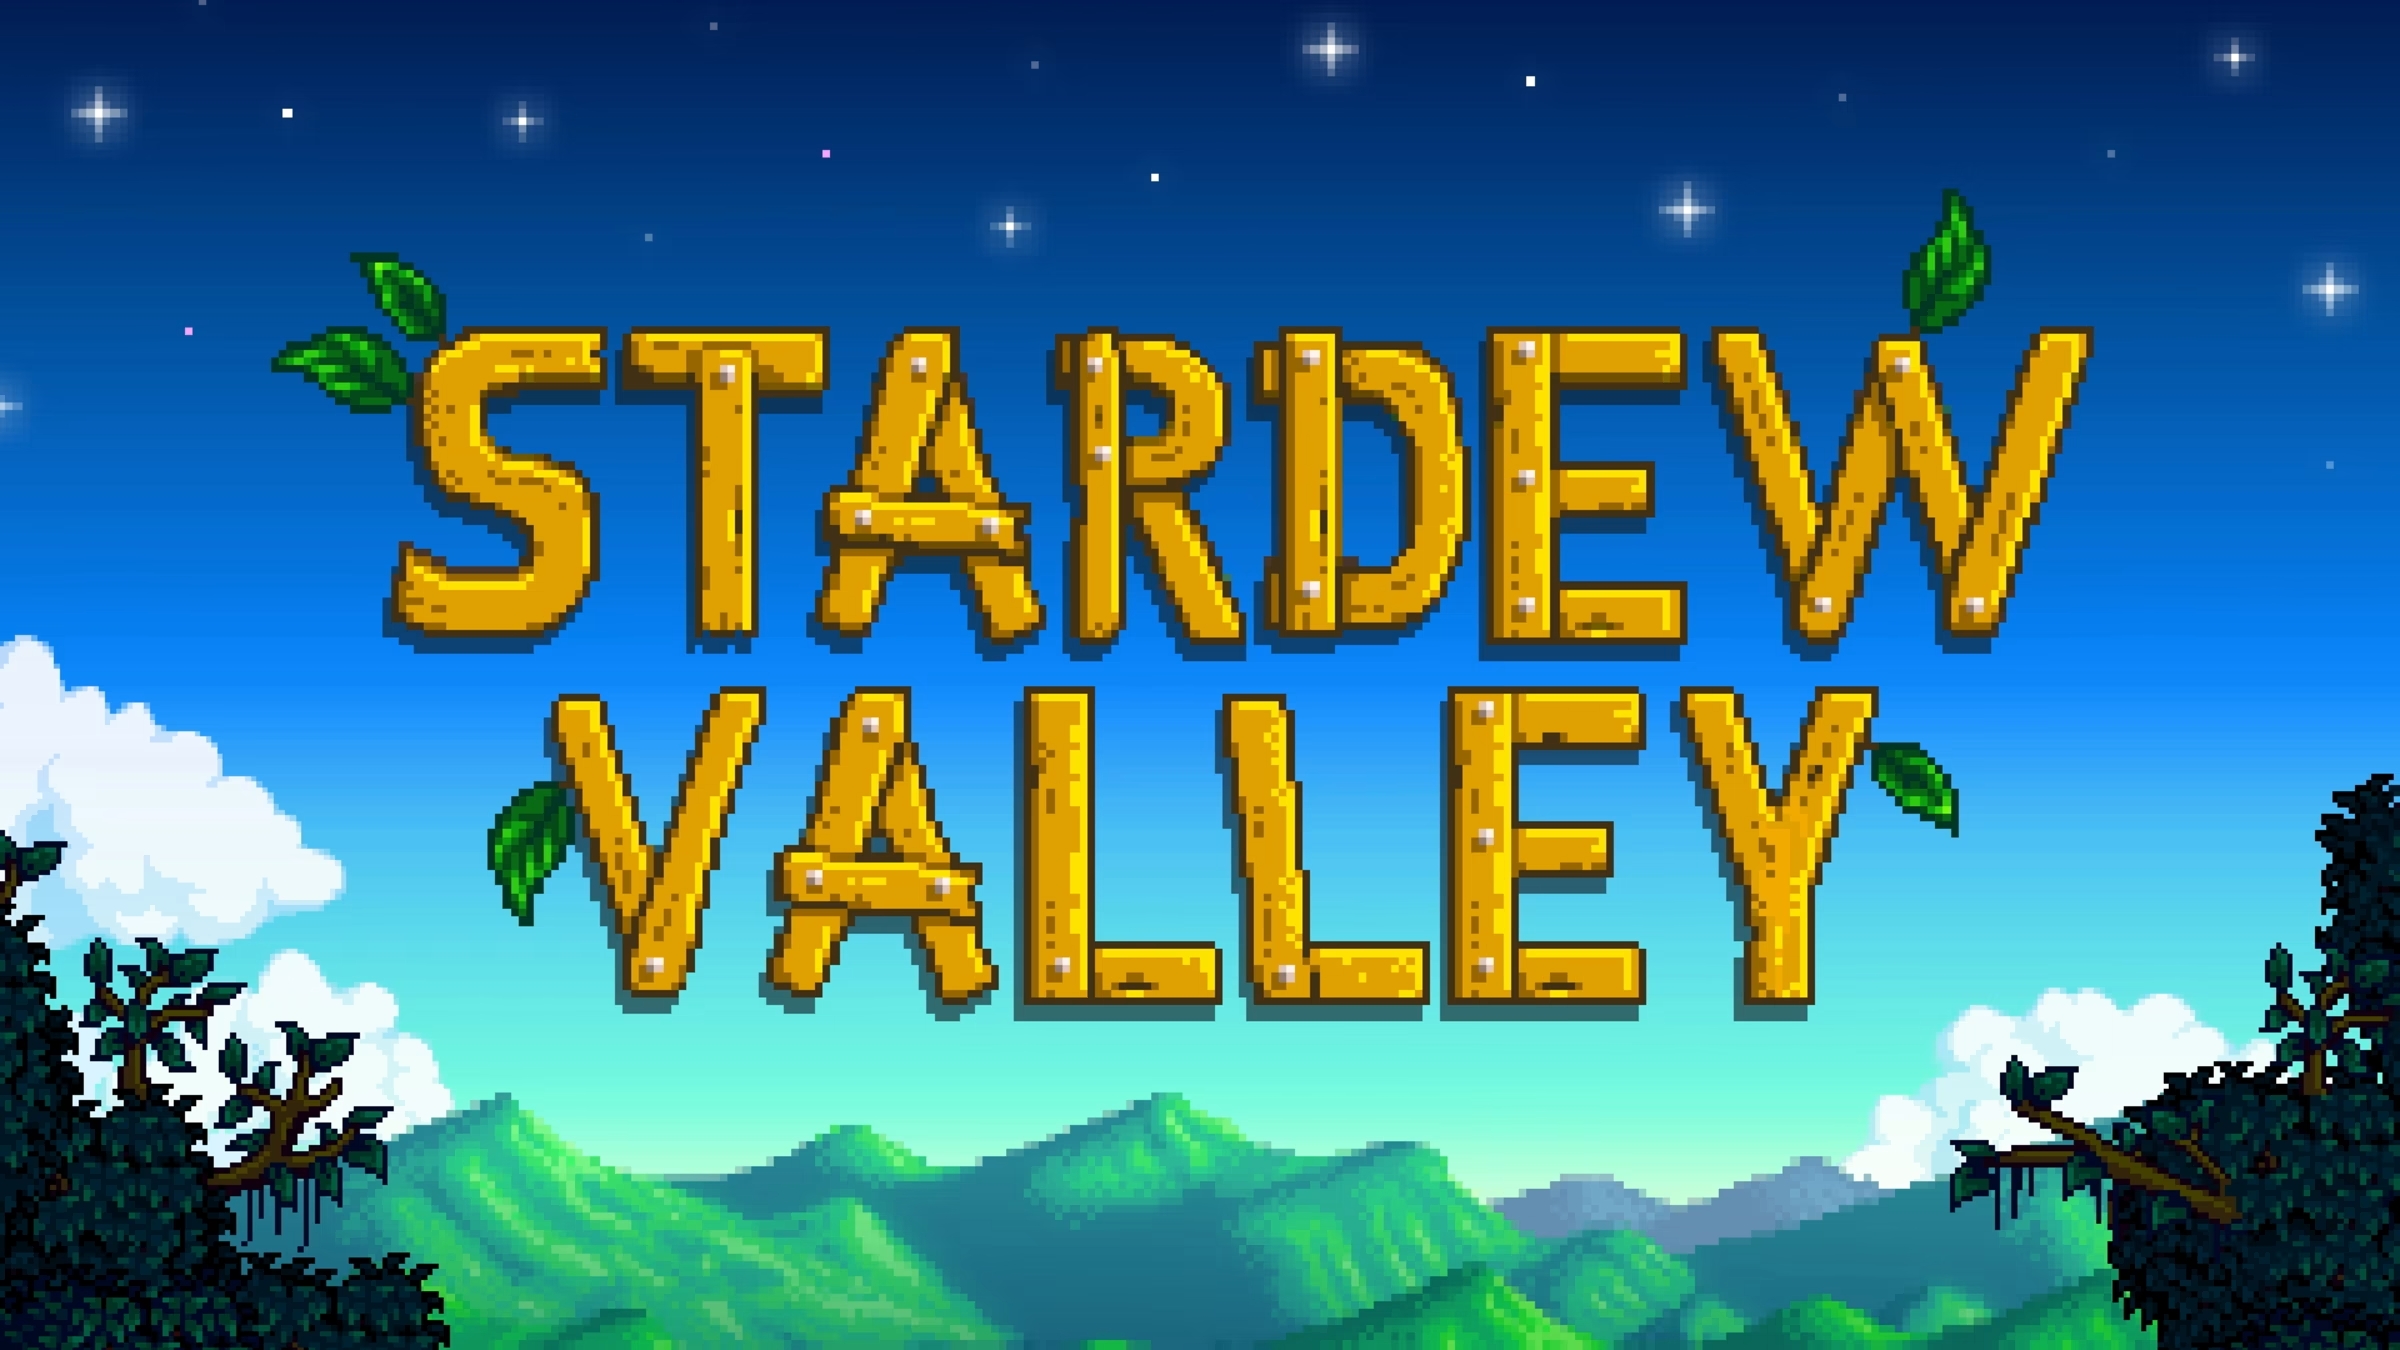 ConcernedApe-utvecklaren berättar lite mer om 1.6-uppdateringen för Stardew Valley